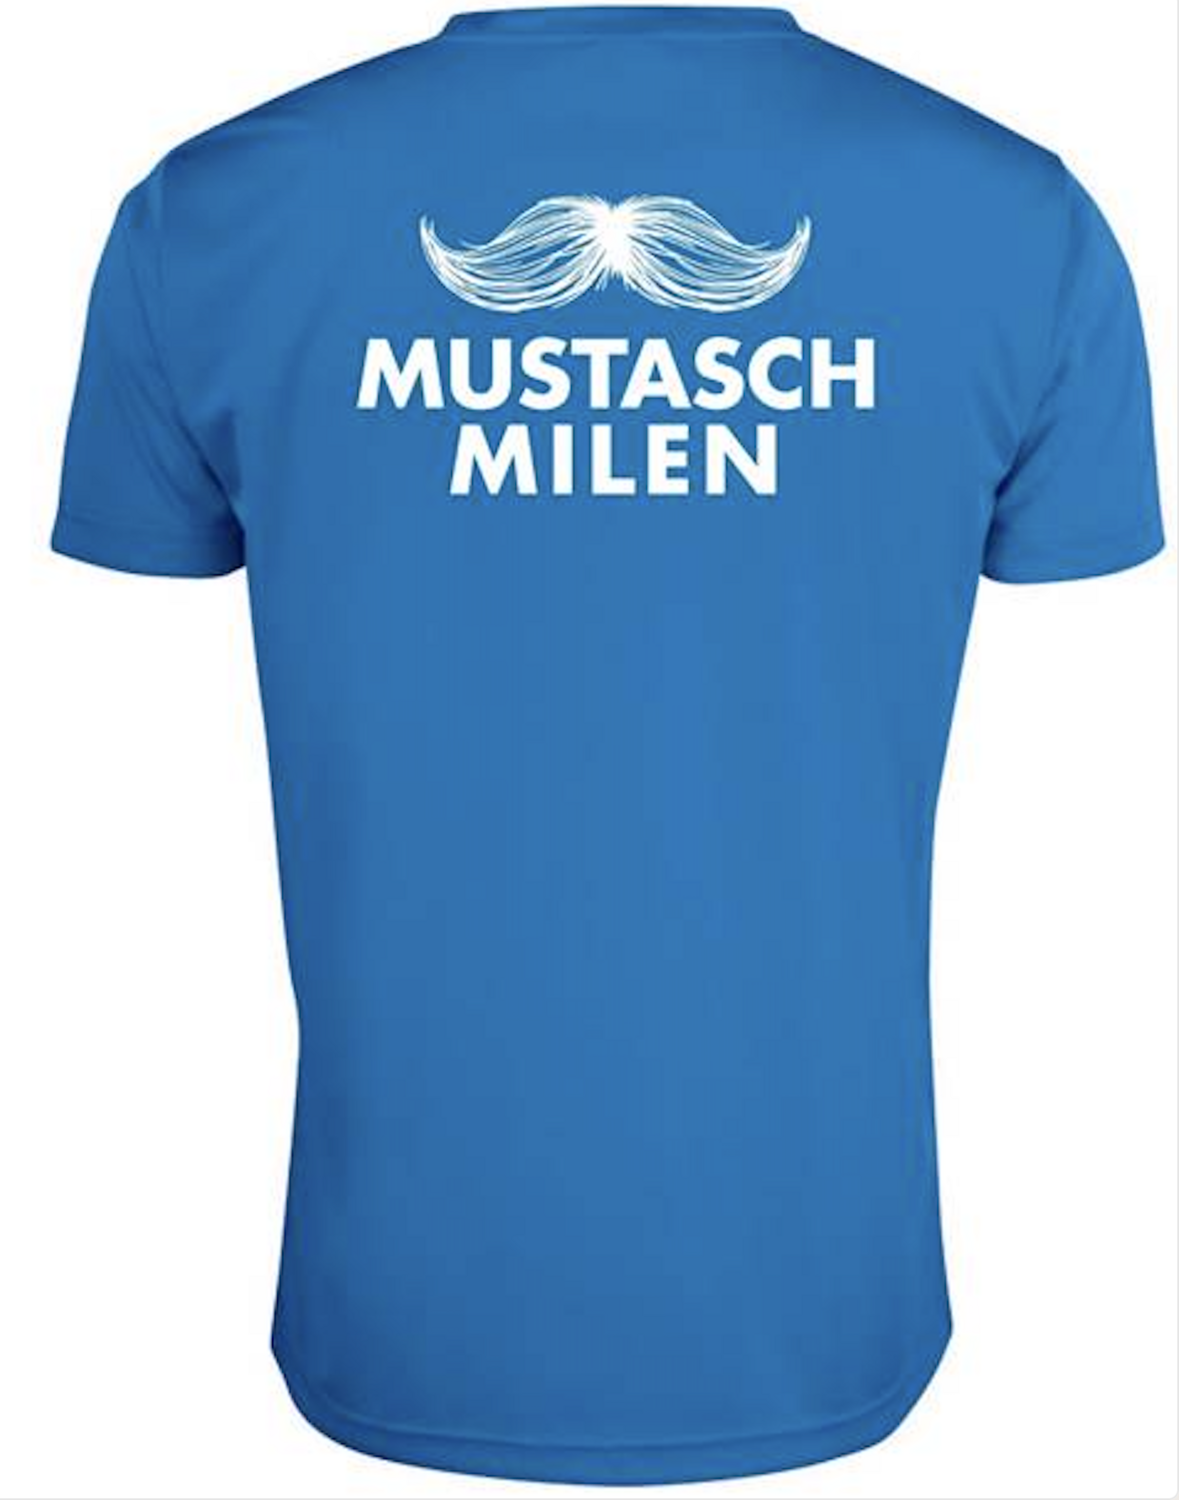 Mustaschmilen 2020 T-shirt